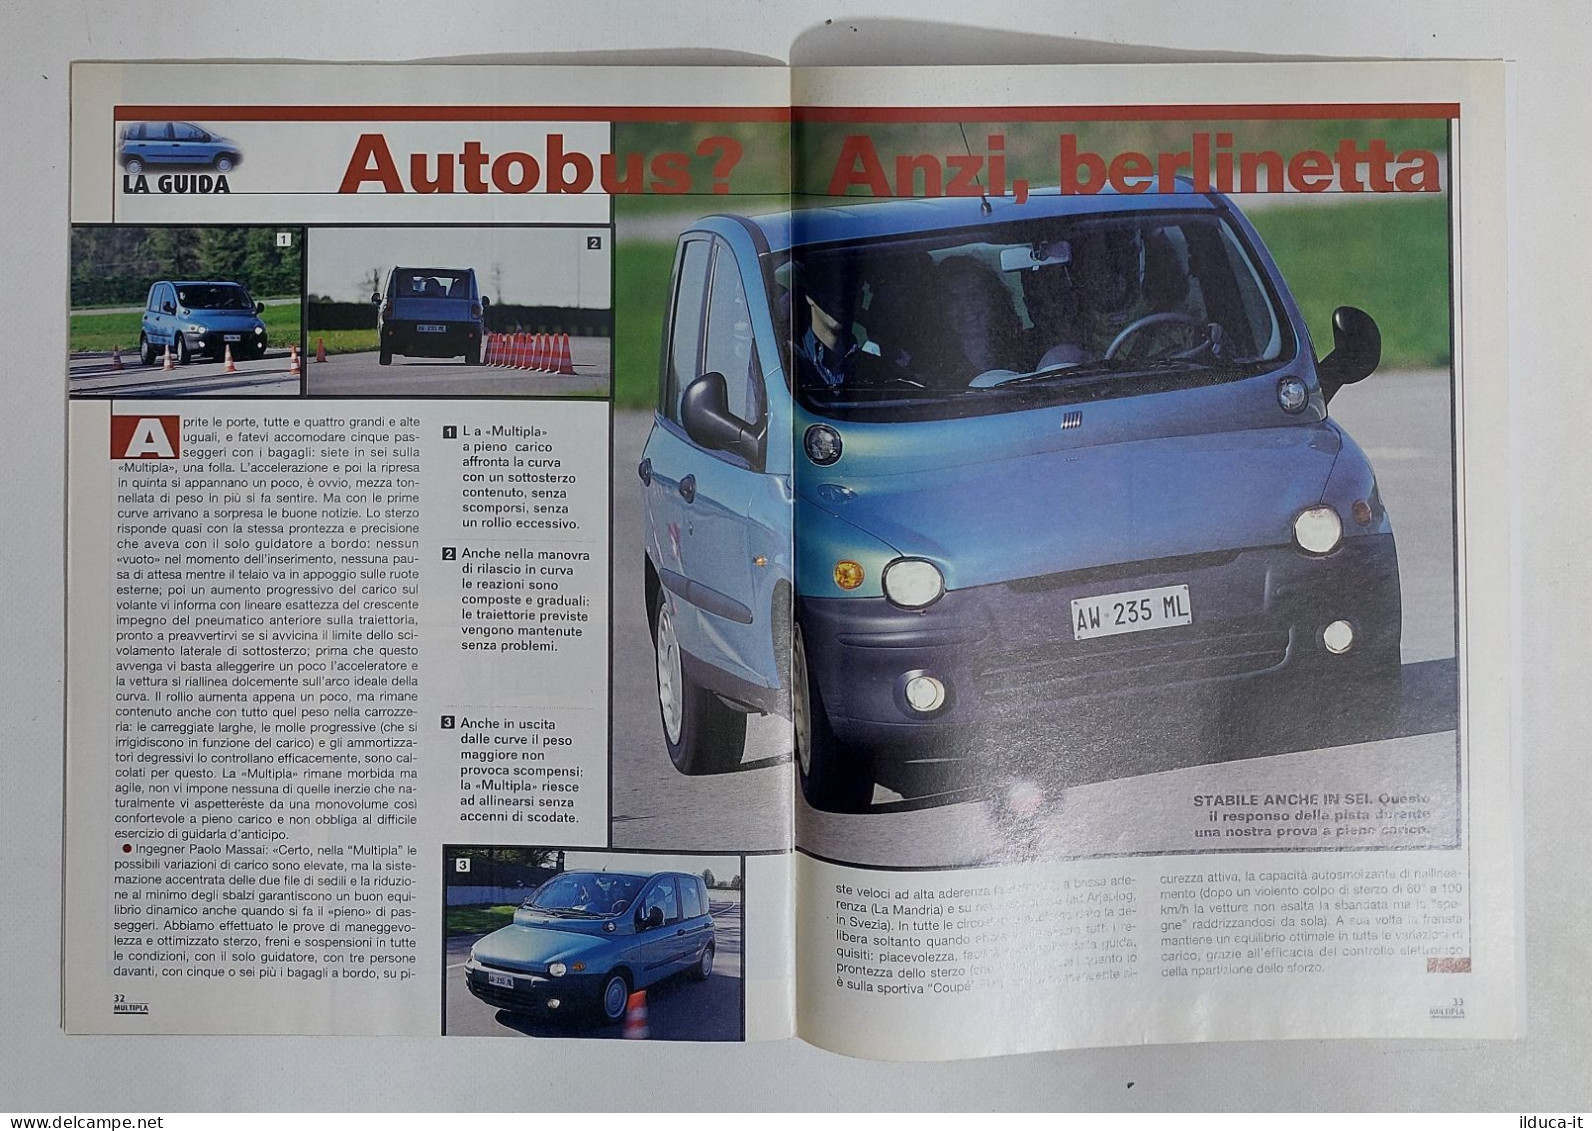 69885 Depliant Auto Quattroruote - FIAT Multipla - 1998 - Voitures